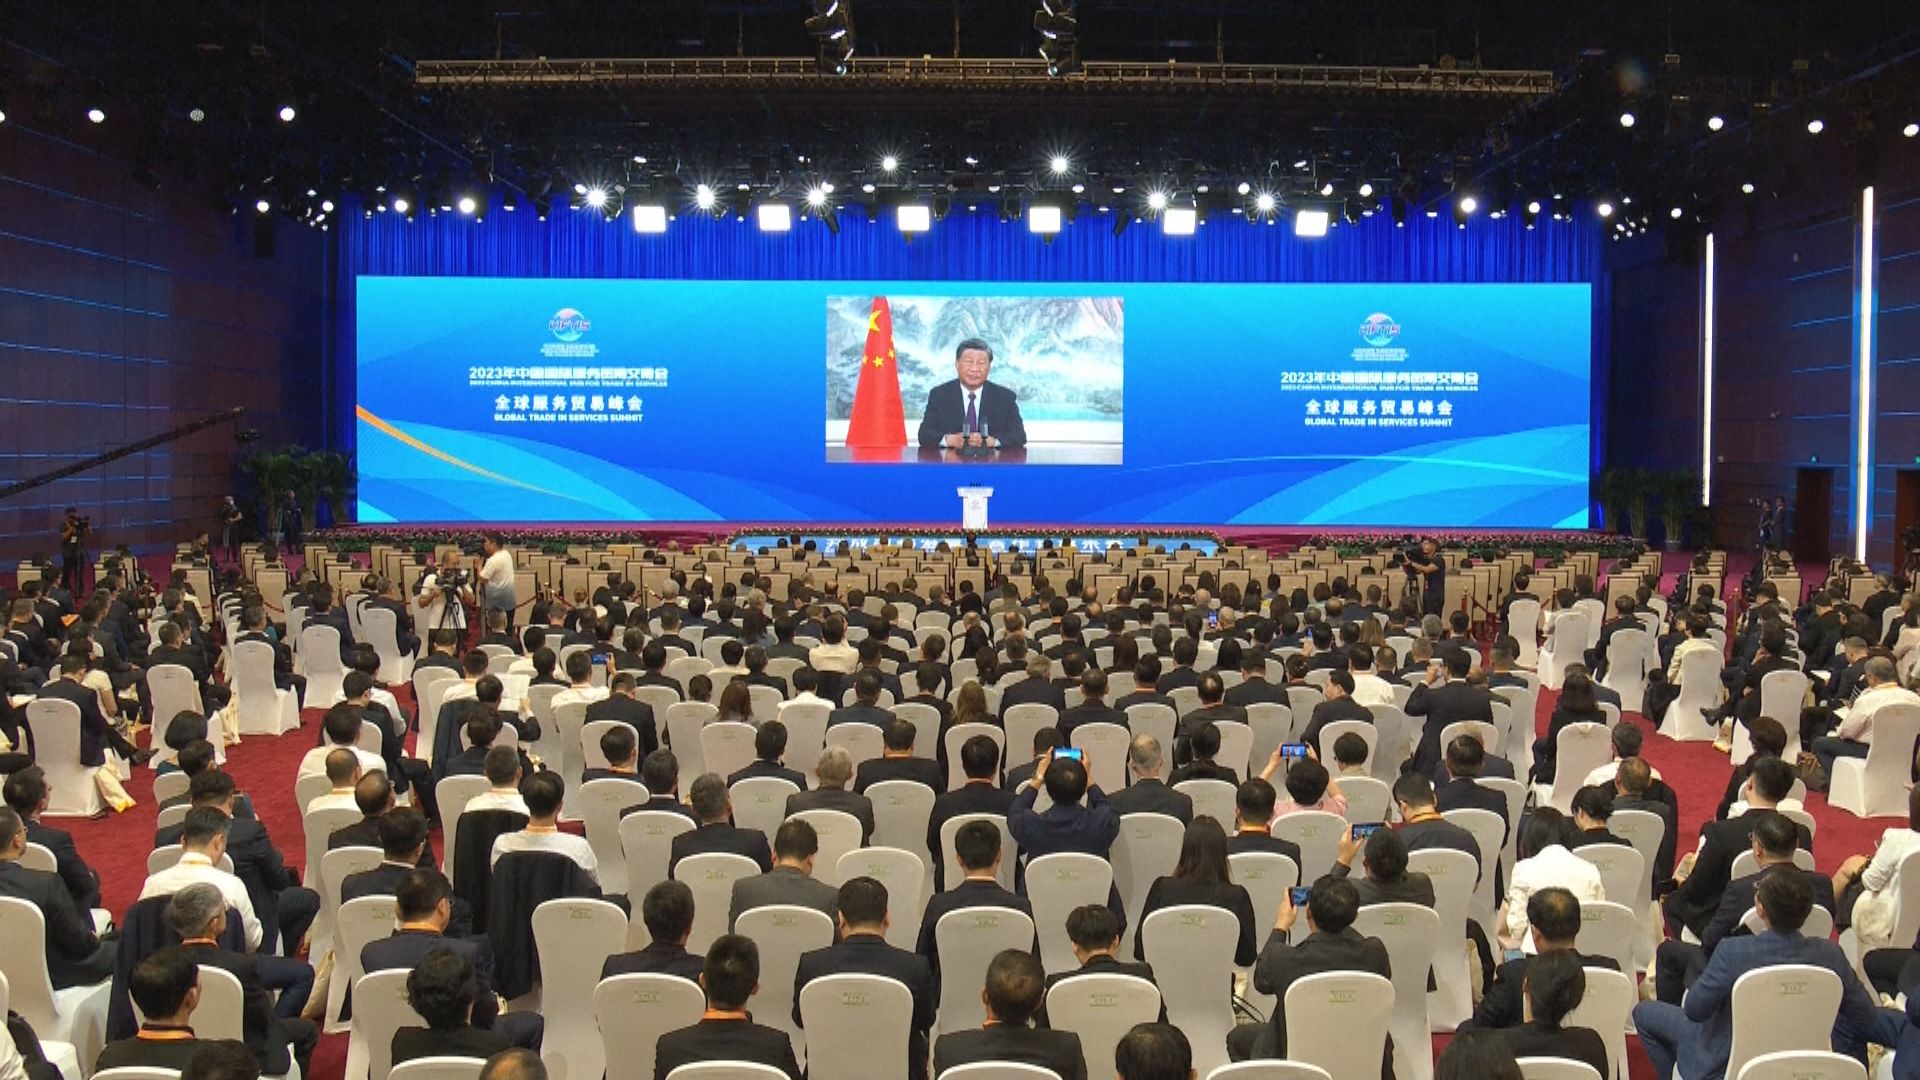 習近平全球服務貿易峰會視像致辭 指中國將打造更開放包容發展環境